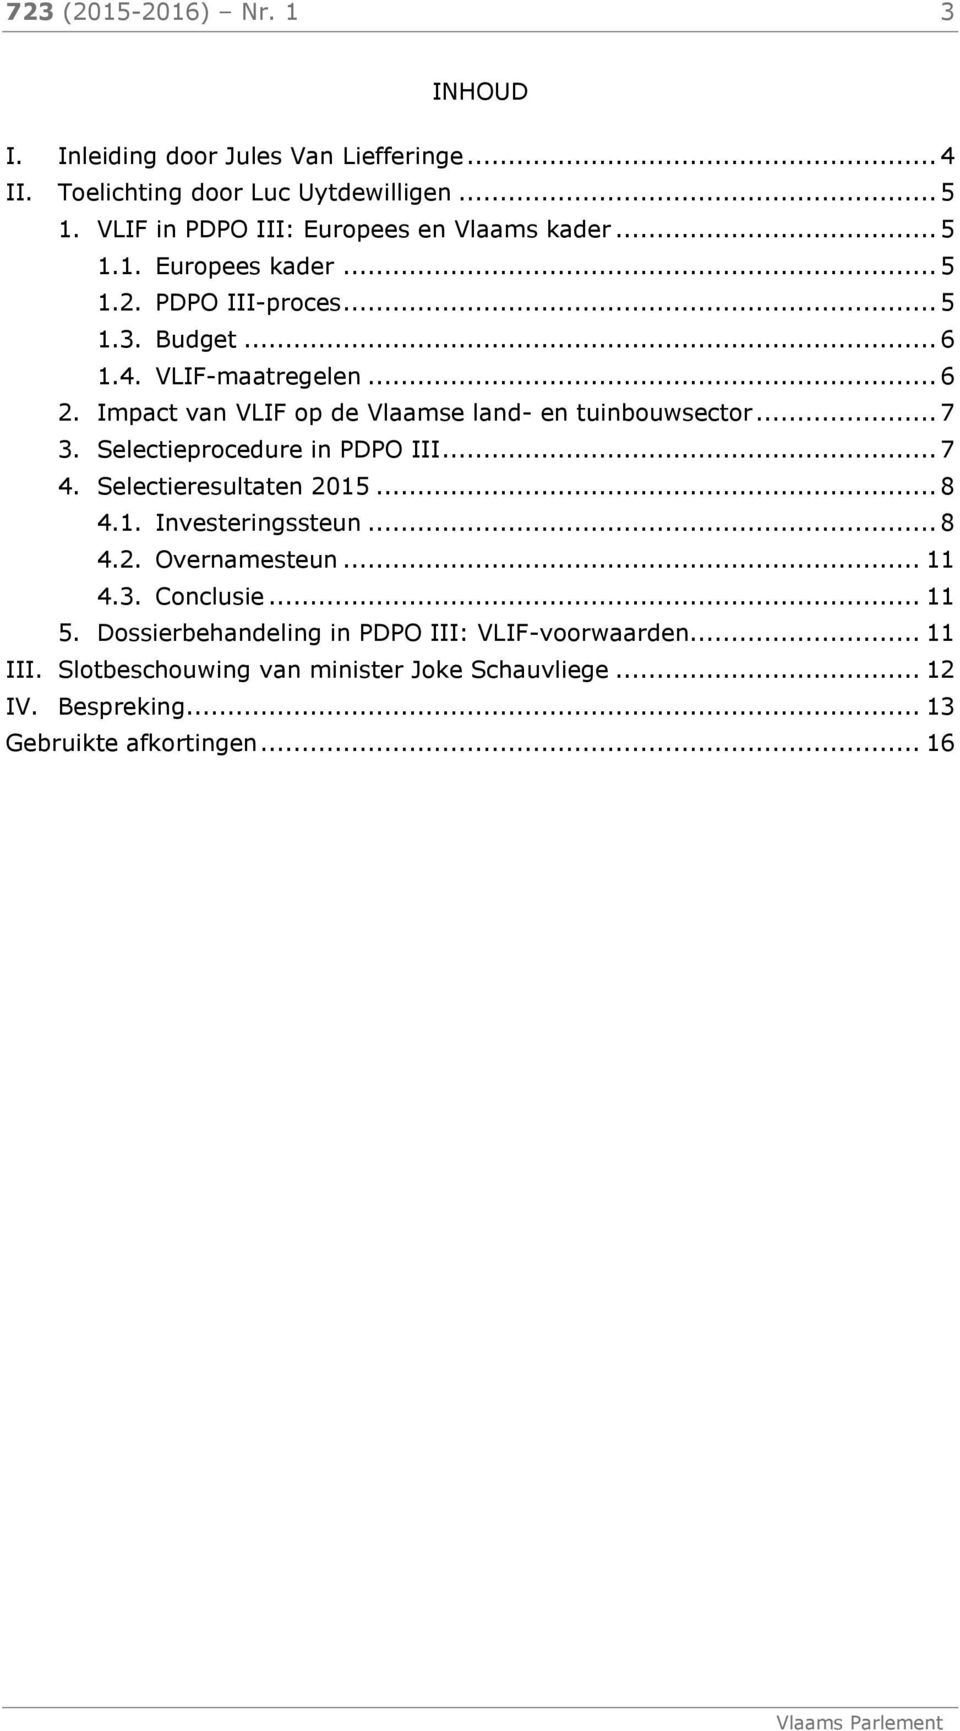 Impact van VLIF op de Vlaamse land- en tuinbouwsector... 7 3. Selectieprocedure in PDPO III... 7 4. Selectieresultaten 215... 8 4.1. Investeringssteun... 8 4.2. Overnamesteun.